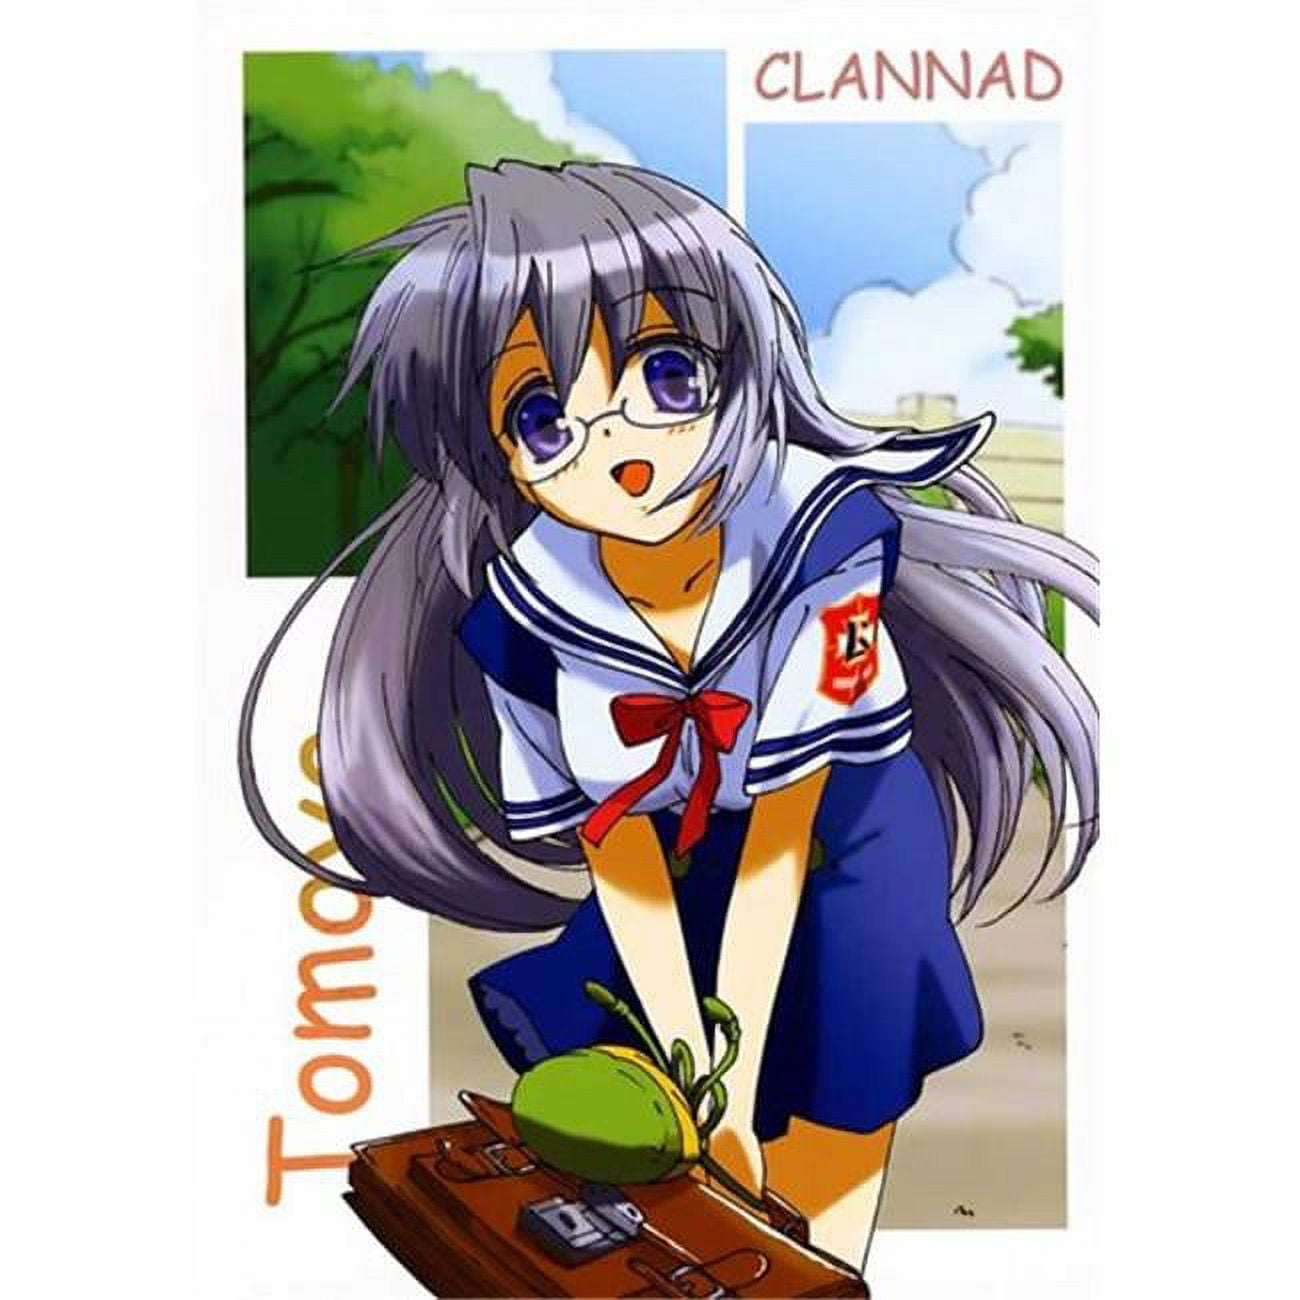 Clannad Movie